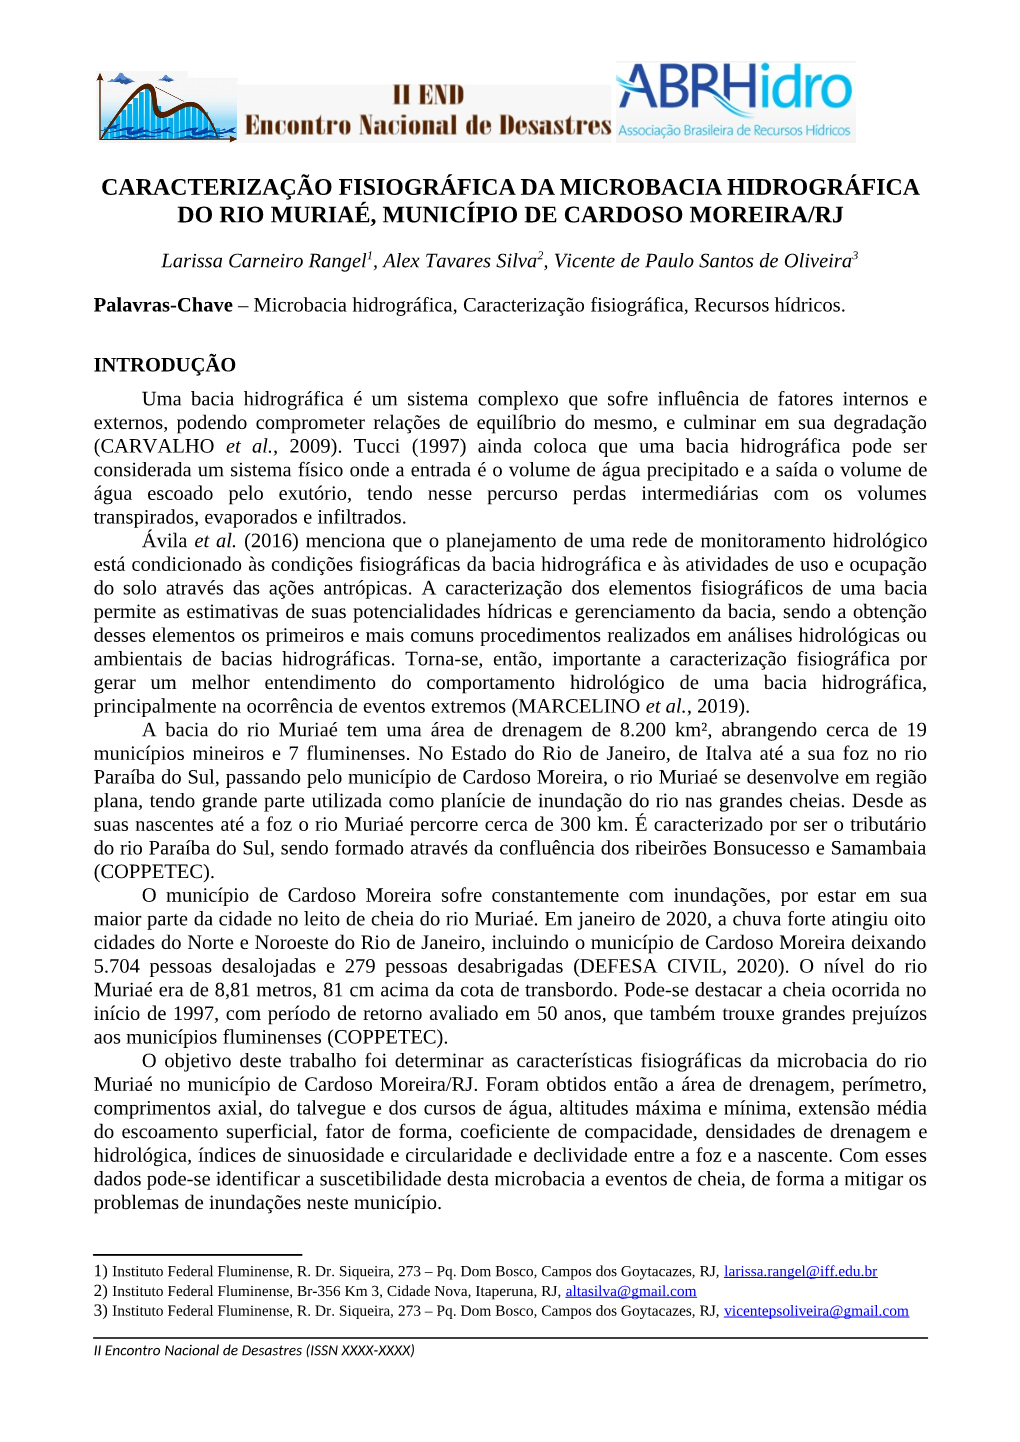 Caracterização Fisiográfica Da Microbacia Hidrográfica Do Rio Muriaé, Município De Cardoso Moreira/Rj